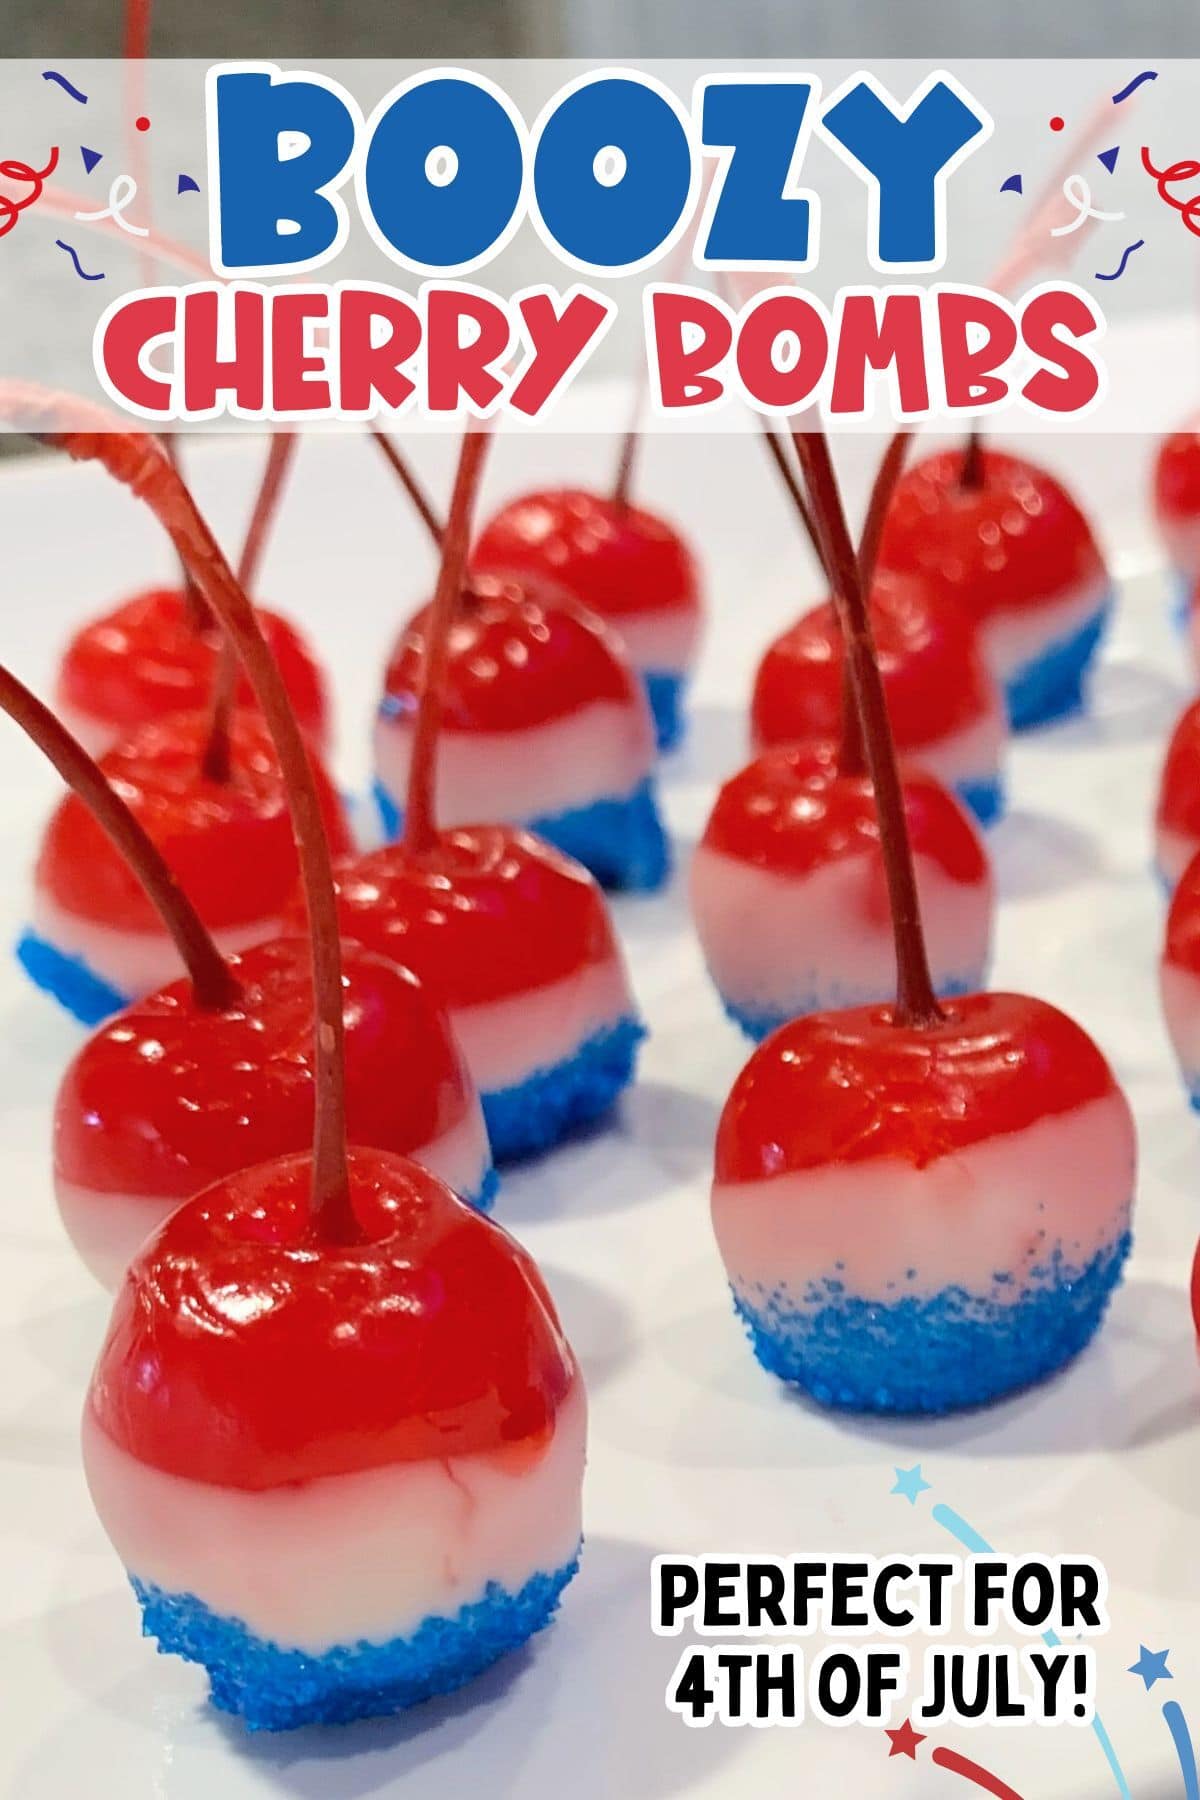 boozy cherry bombs pinterest